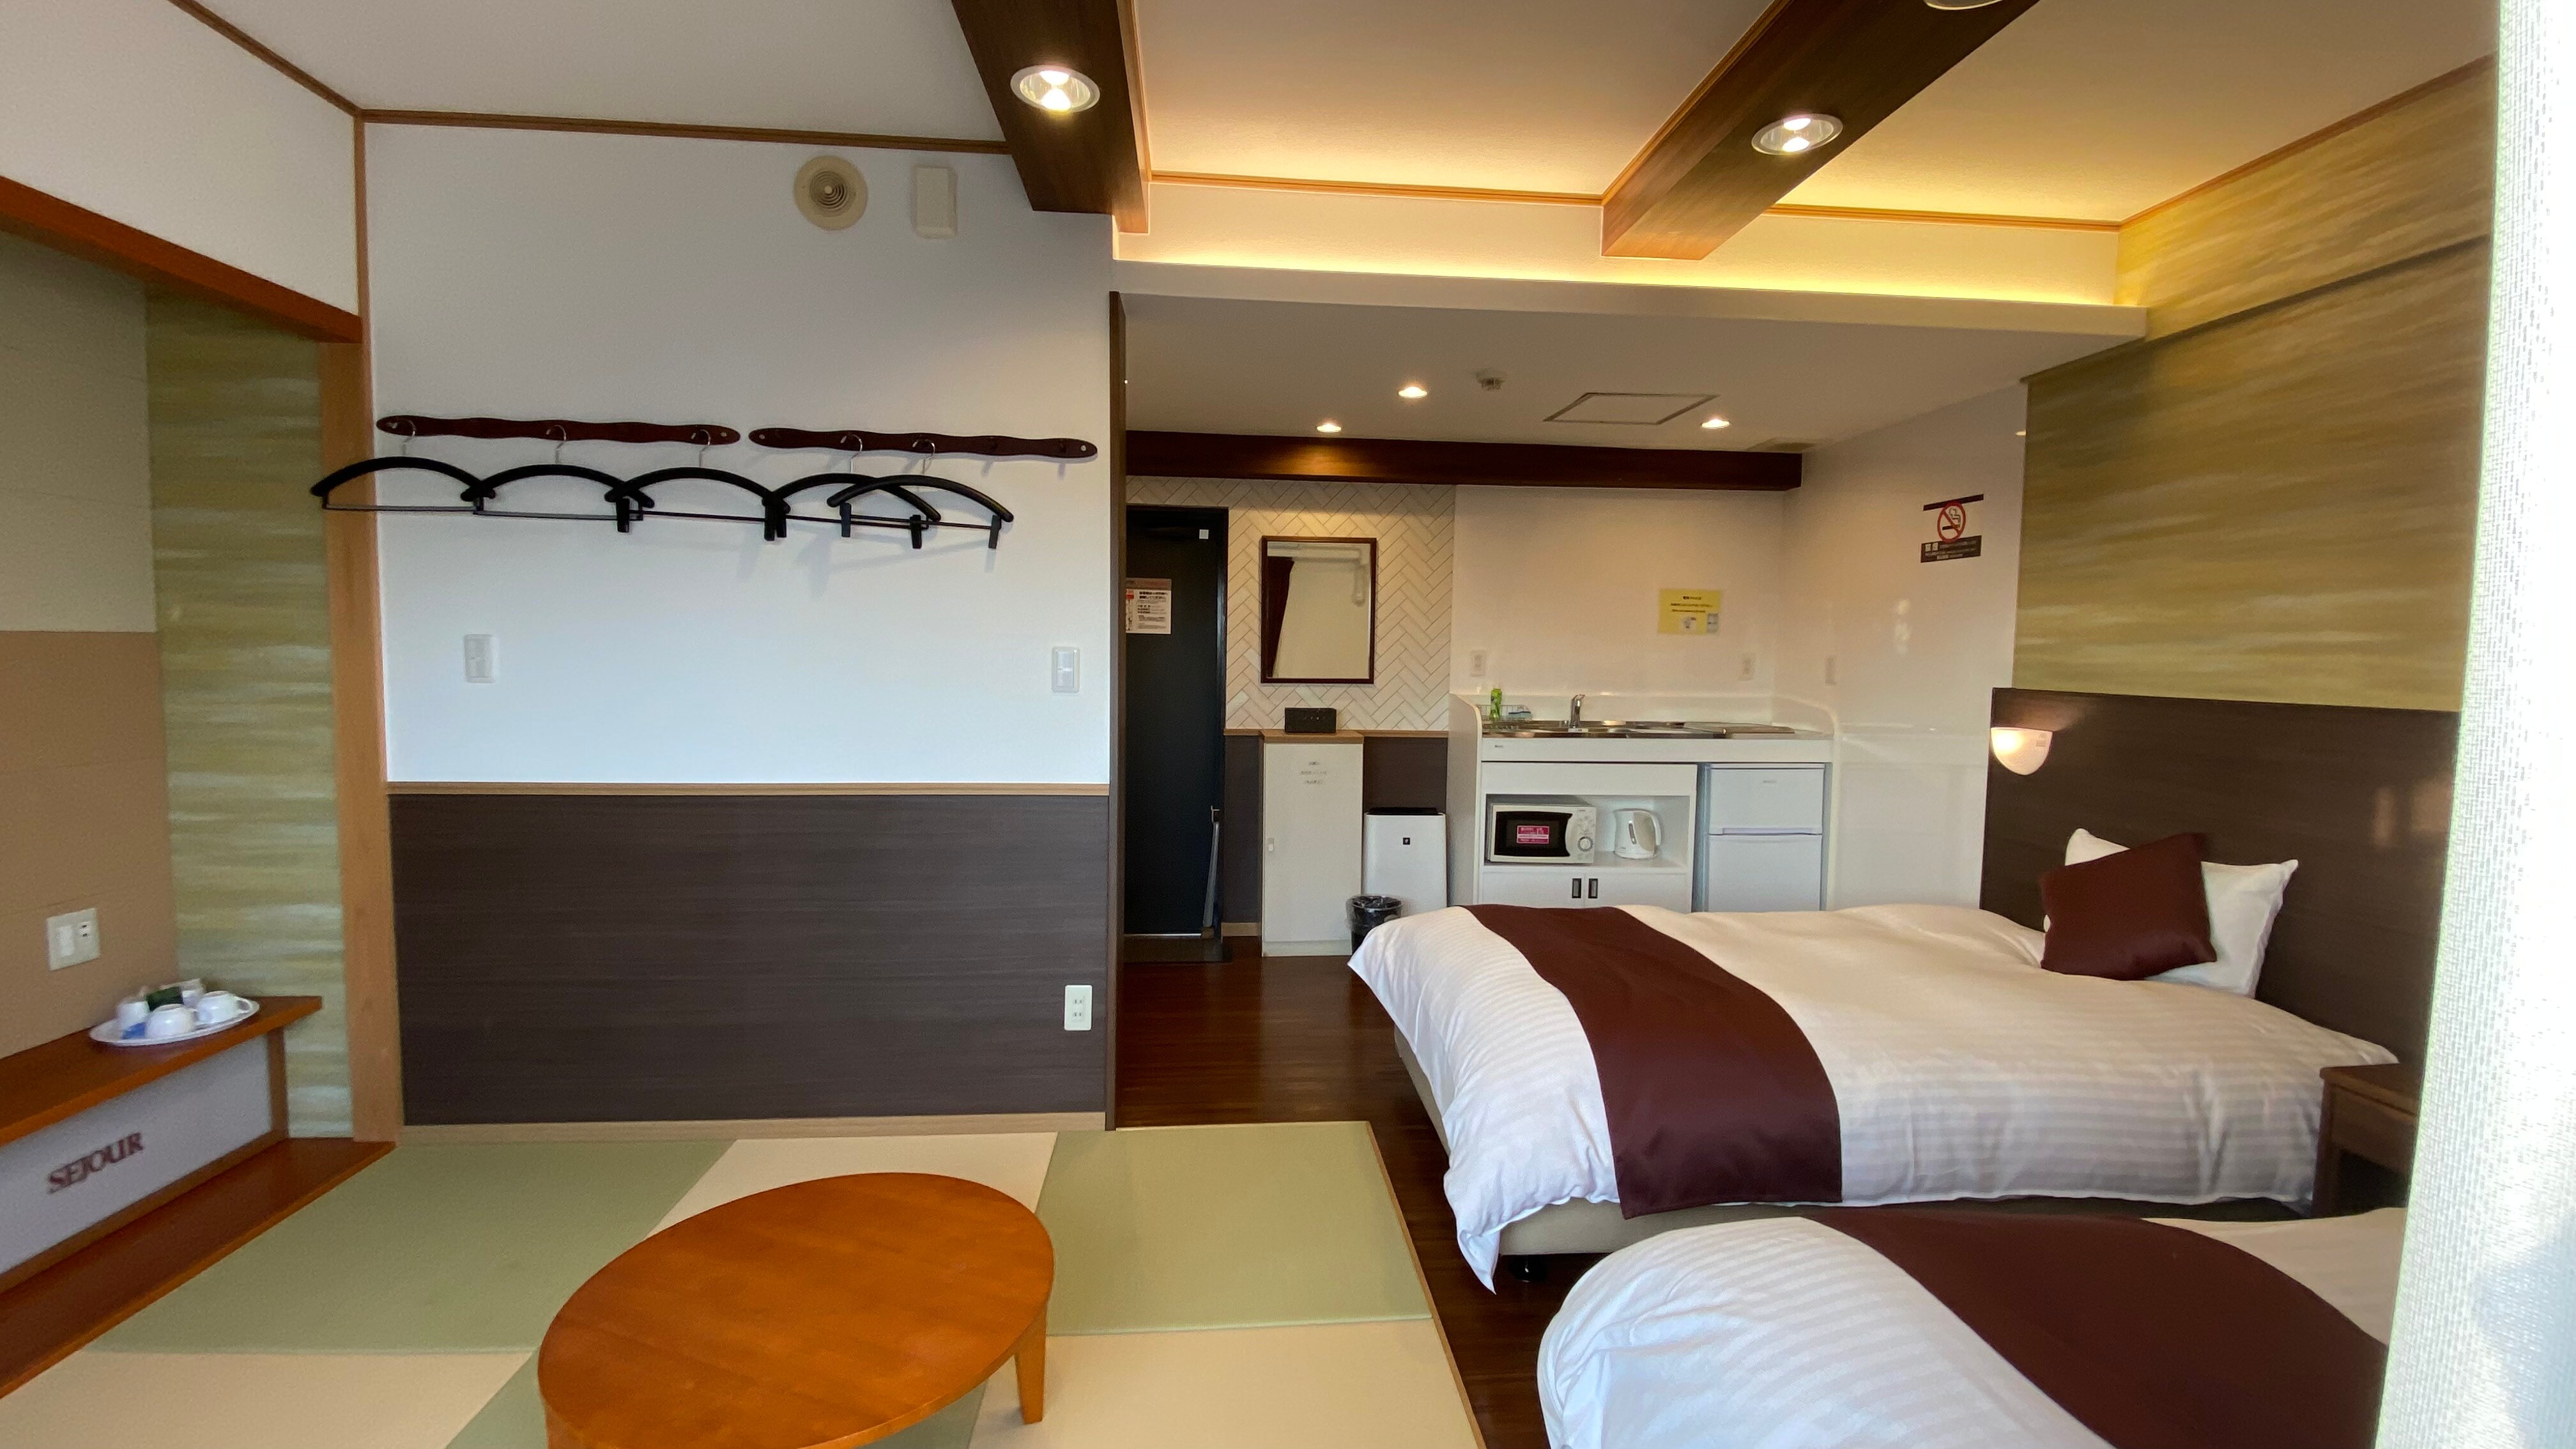 ห้องเตียงแฝดอาคารหลัก + ห้องญี่ปุ่นและตะวันตก (ขนาด 25 ตร.ม. ความกว้างเตียง 110 ซม. และ 110 ซม. + ห้องญี่ปุ่นและตะวันตก 4.5 เสื่อทาทามิ)